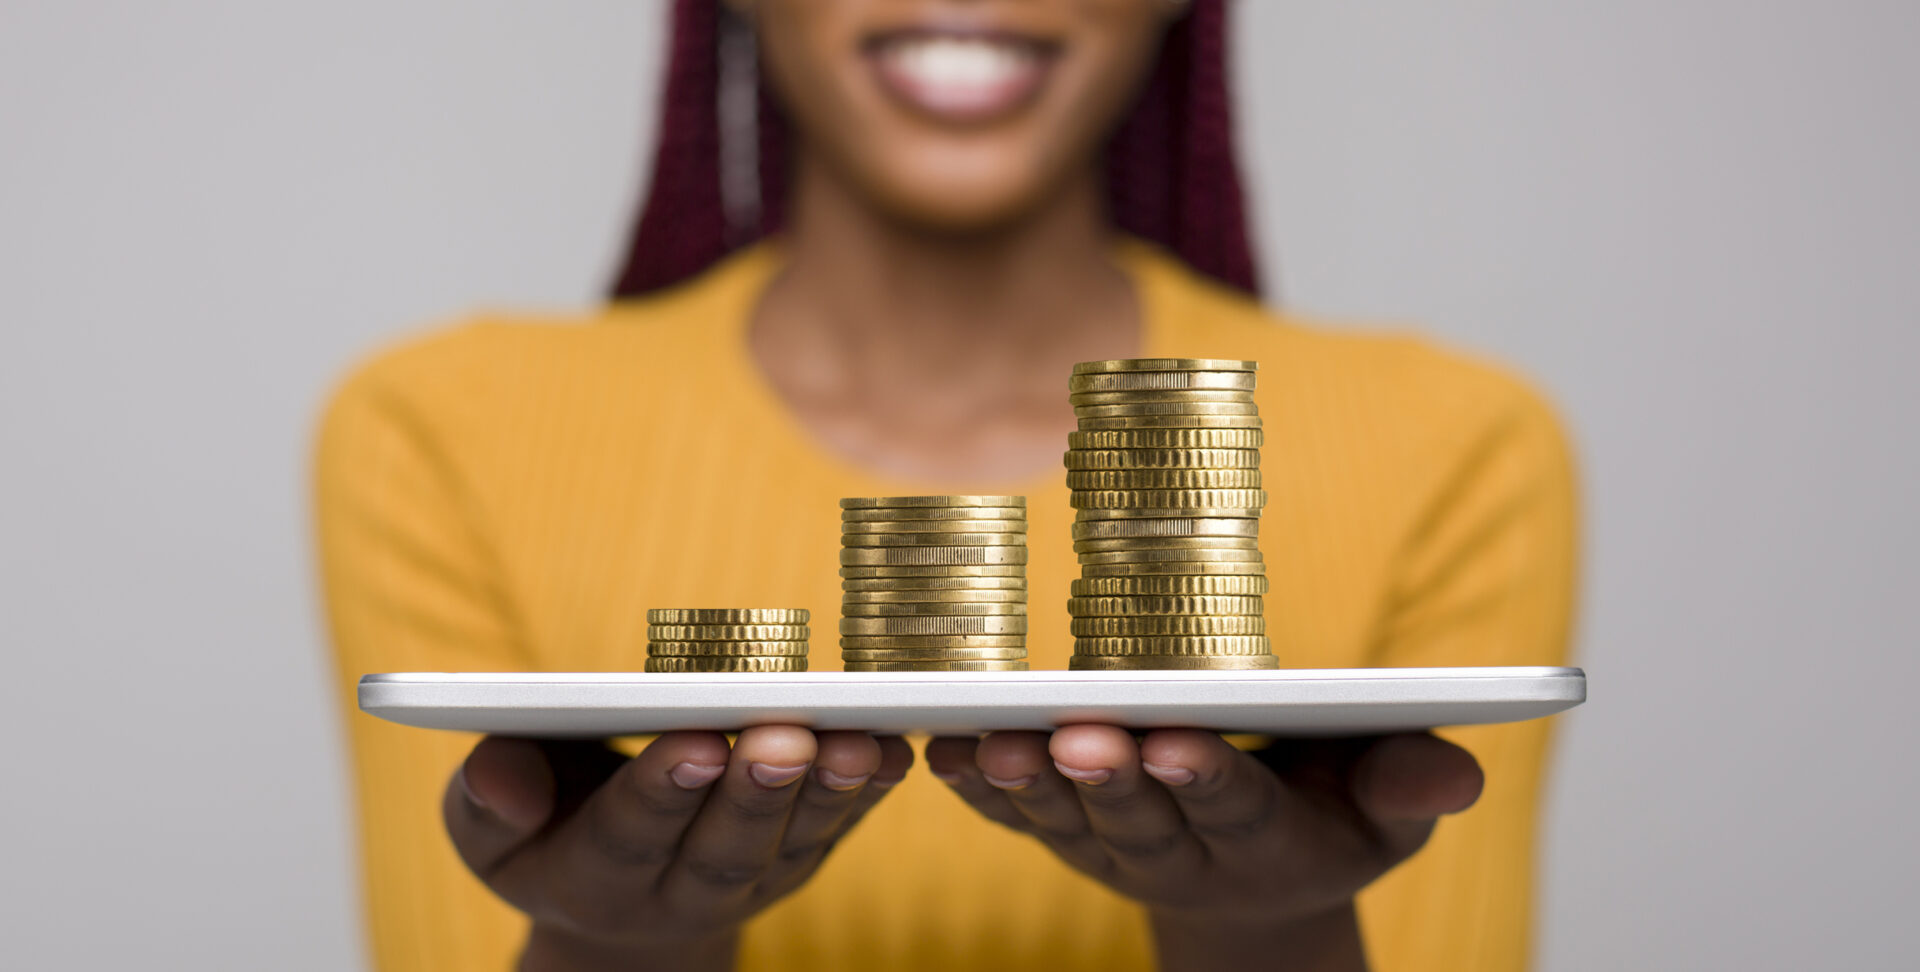 Entrepreneur Raises $1.2M In Funding To Launch New Platform For Black Women Founders